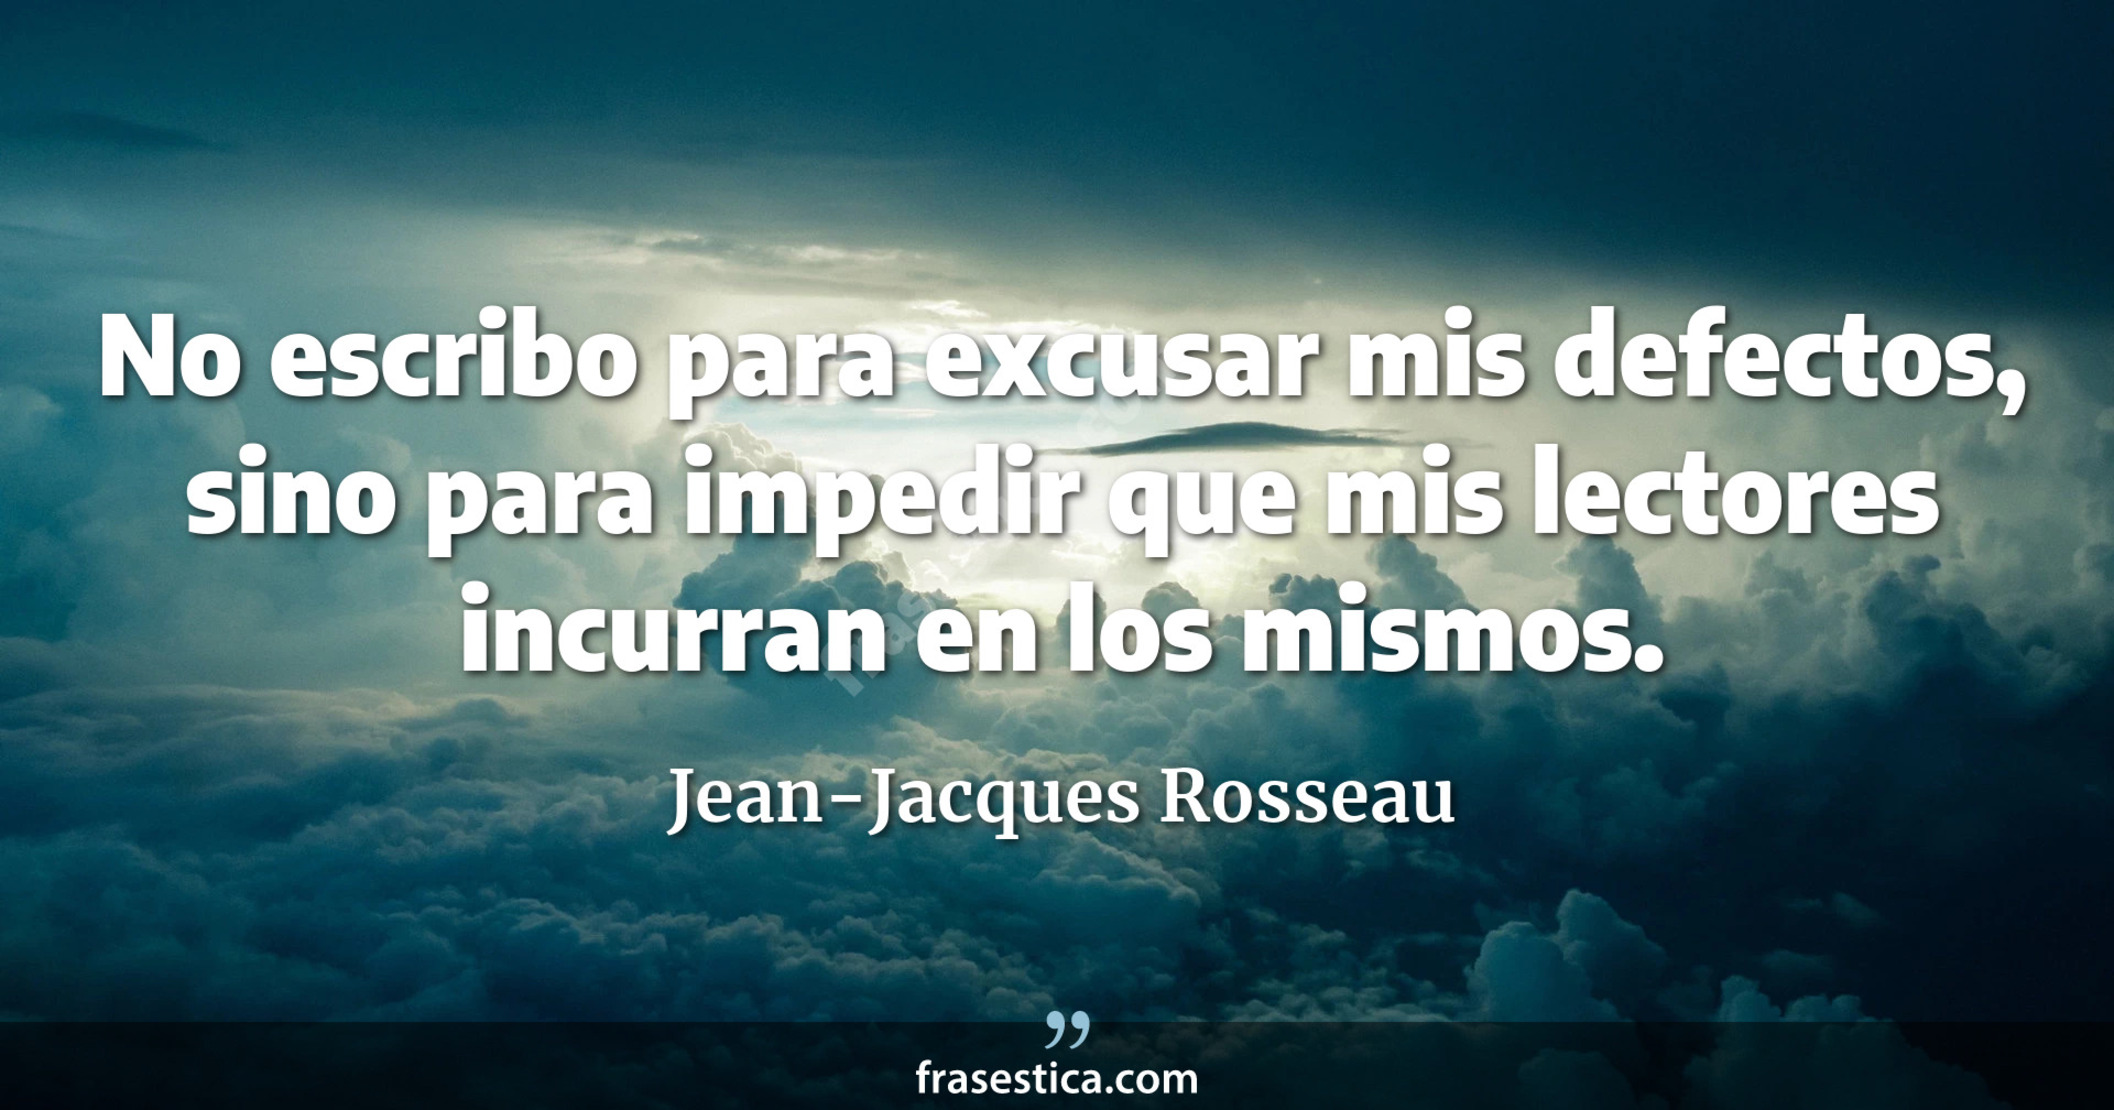 No escribo para excusar mis defectos, sino para impedir que mis lectores incurran en los mismos. - Jean-Jacques Rosseau